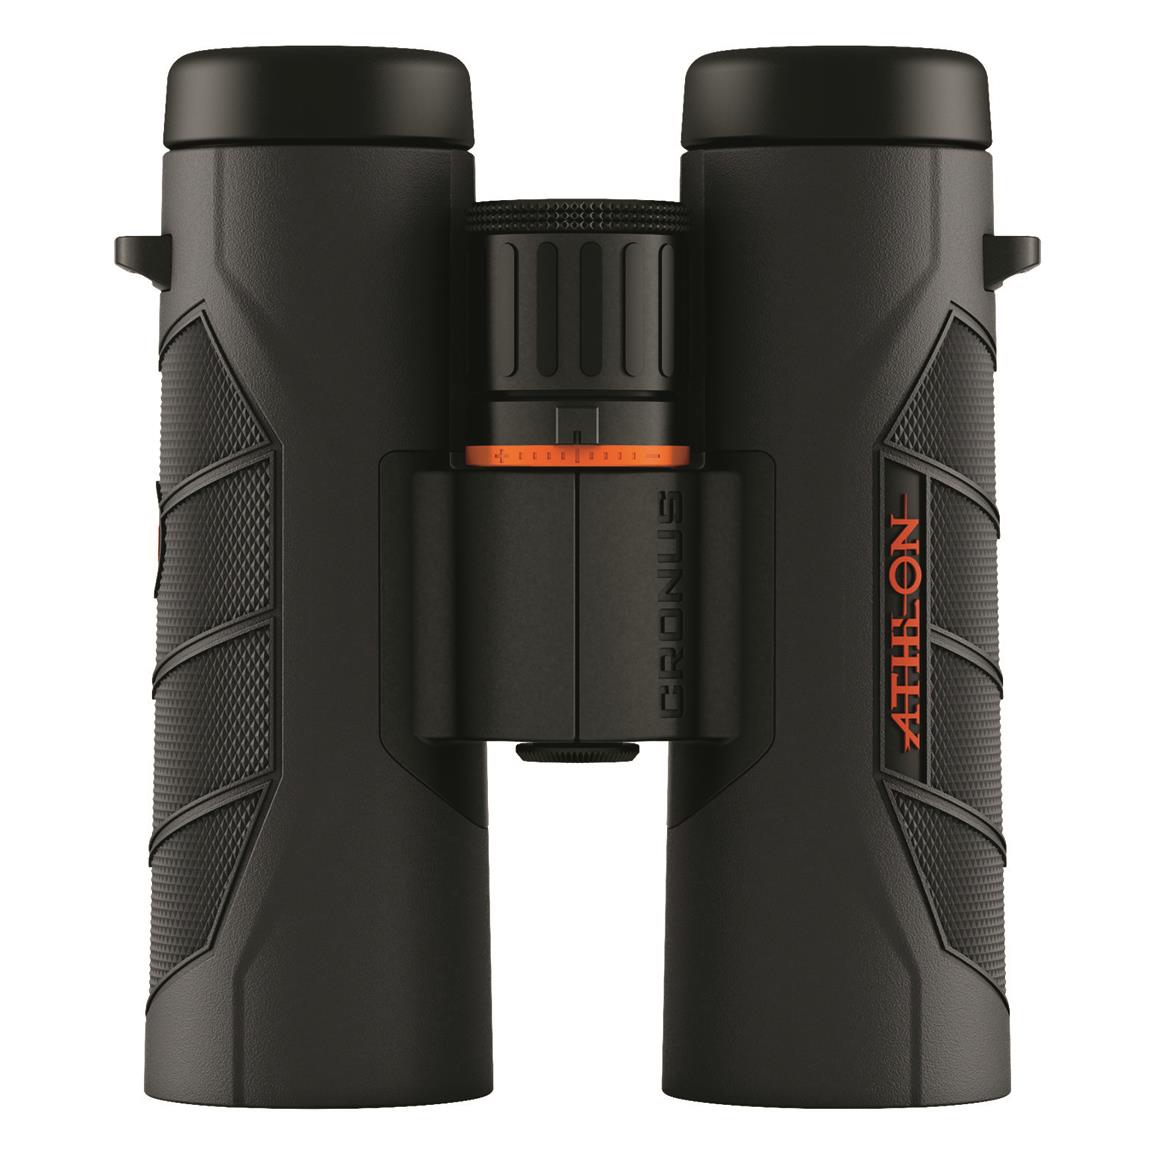 Athlon Cronus G2 UHD 10x42mm Binoculars